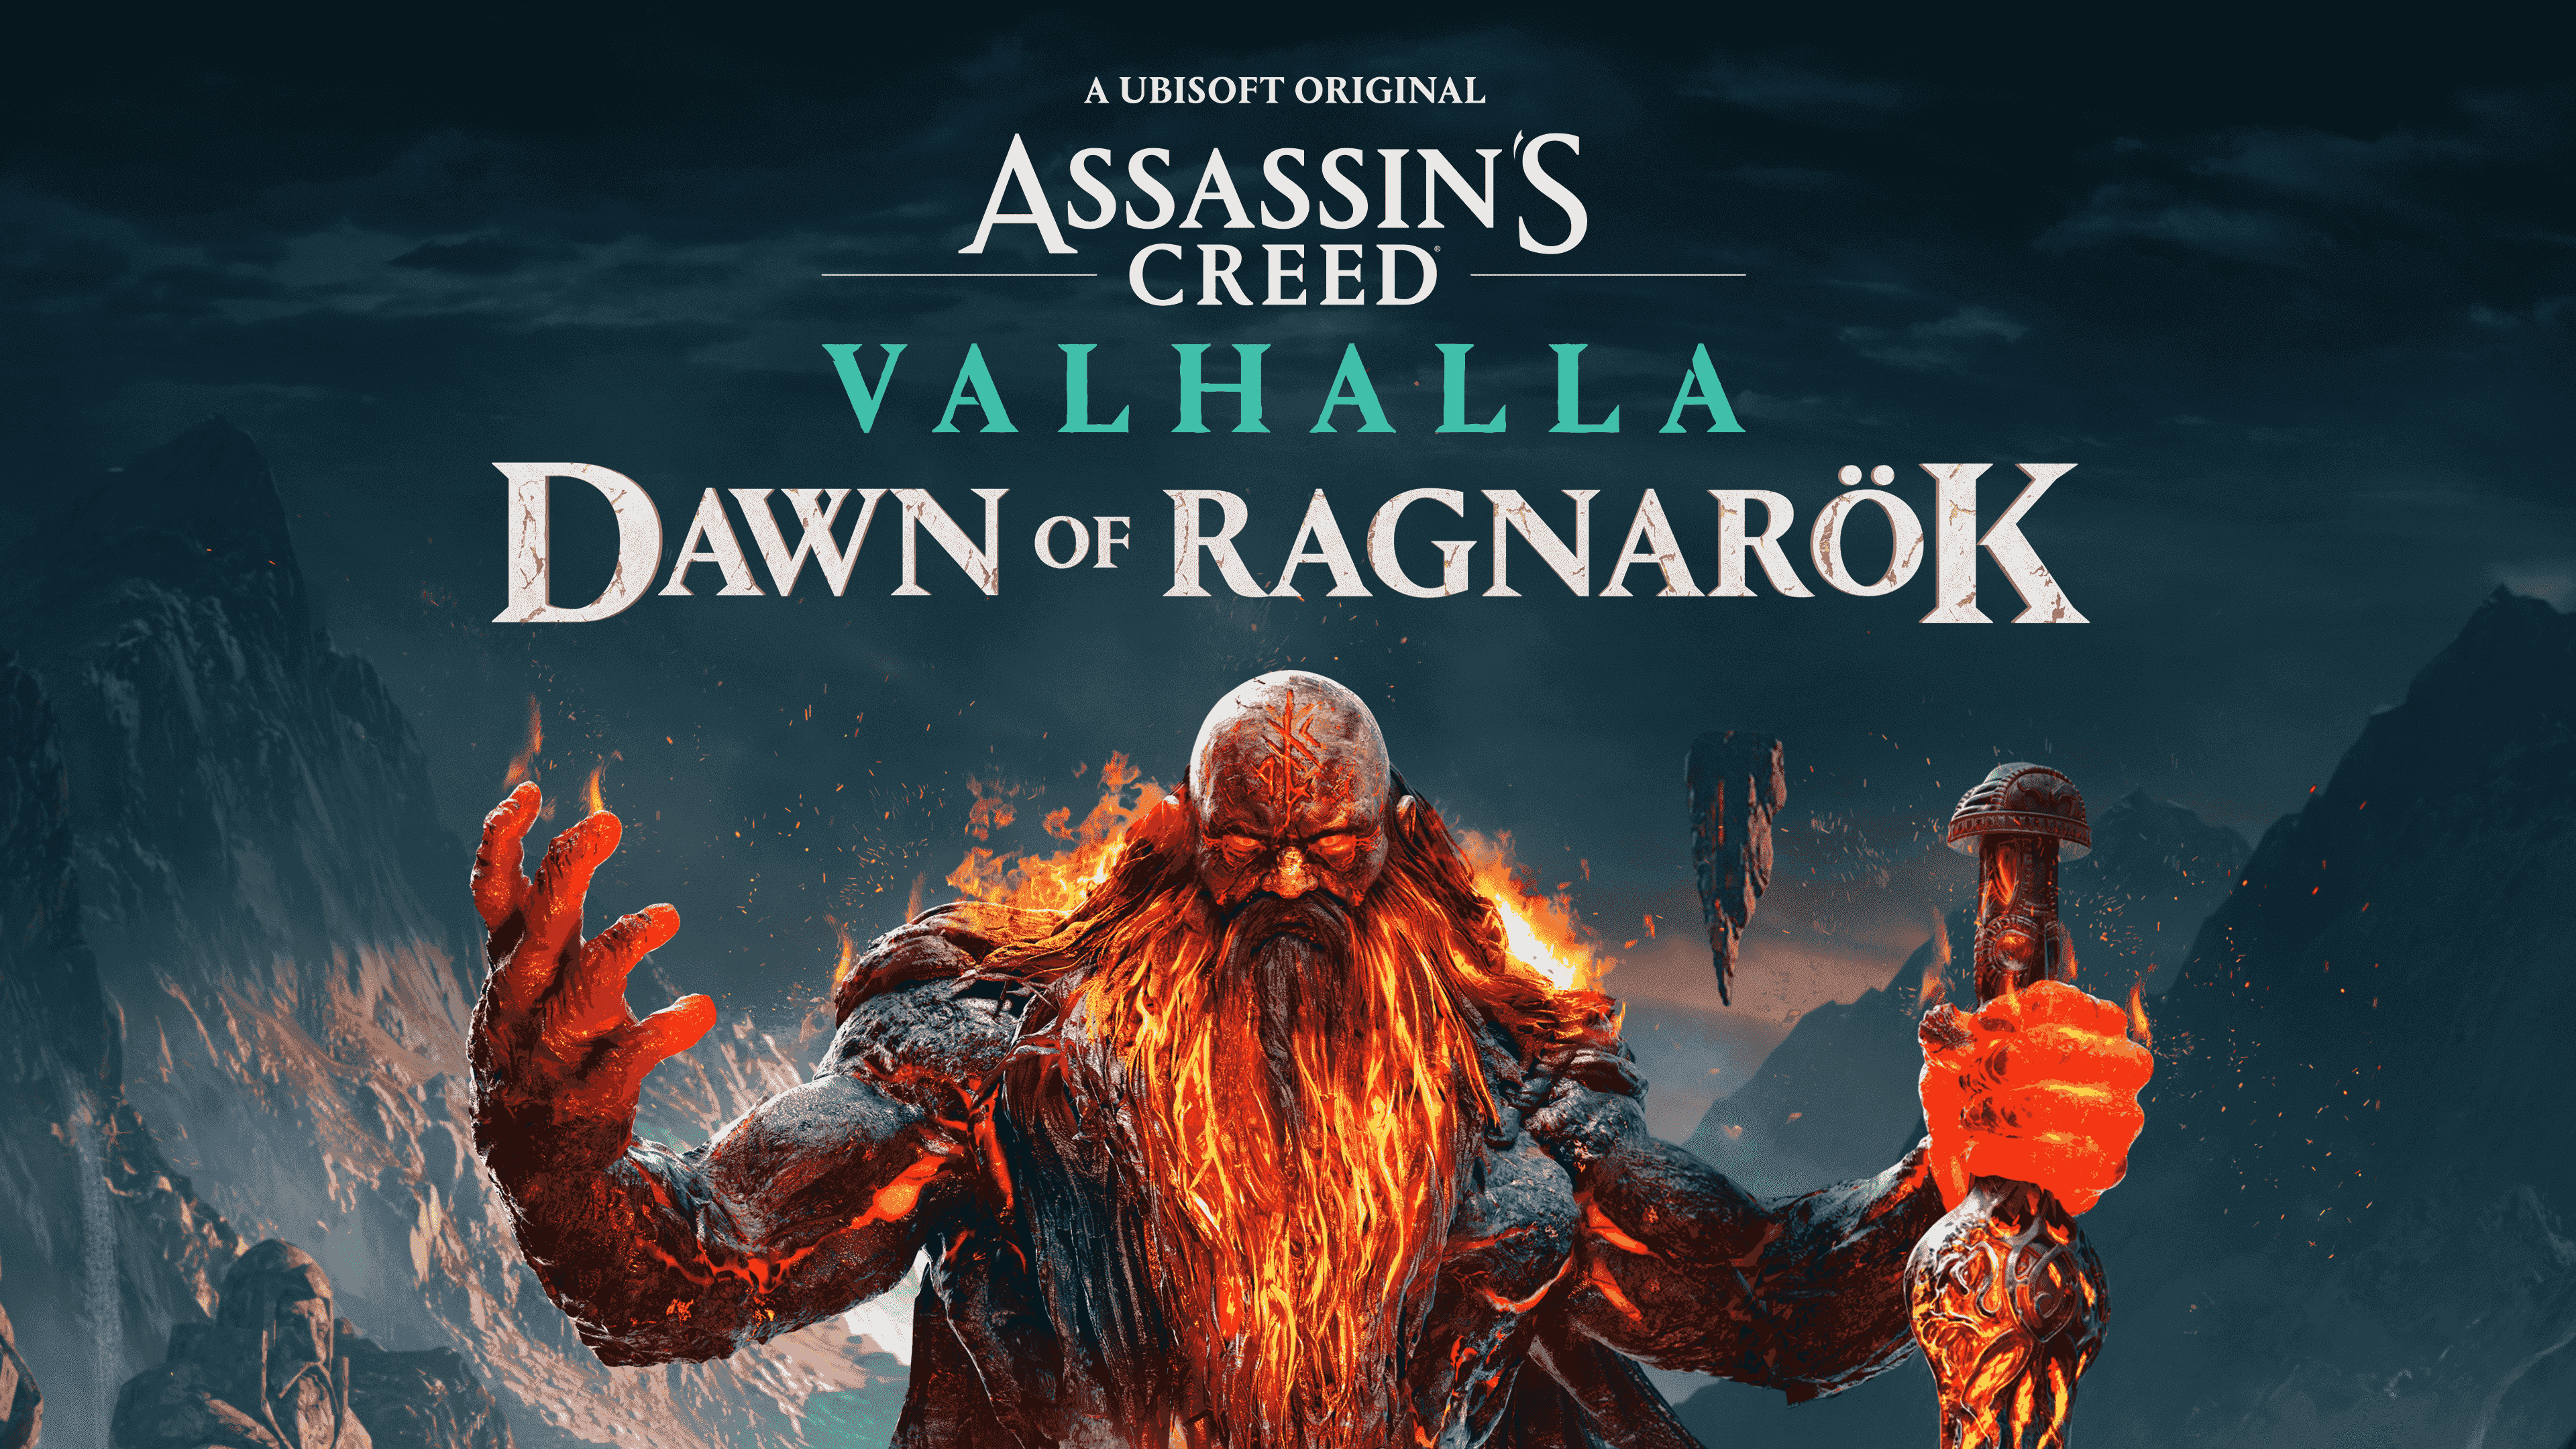 Un vistazo a la Inspiración mítica detrás de Assassin’s Creed Valhalla: Dawn of Ragnarök